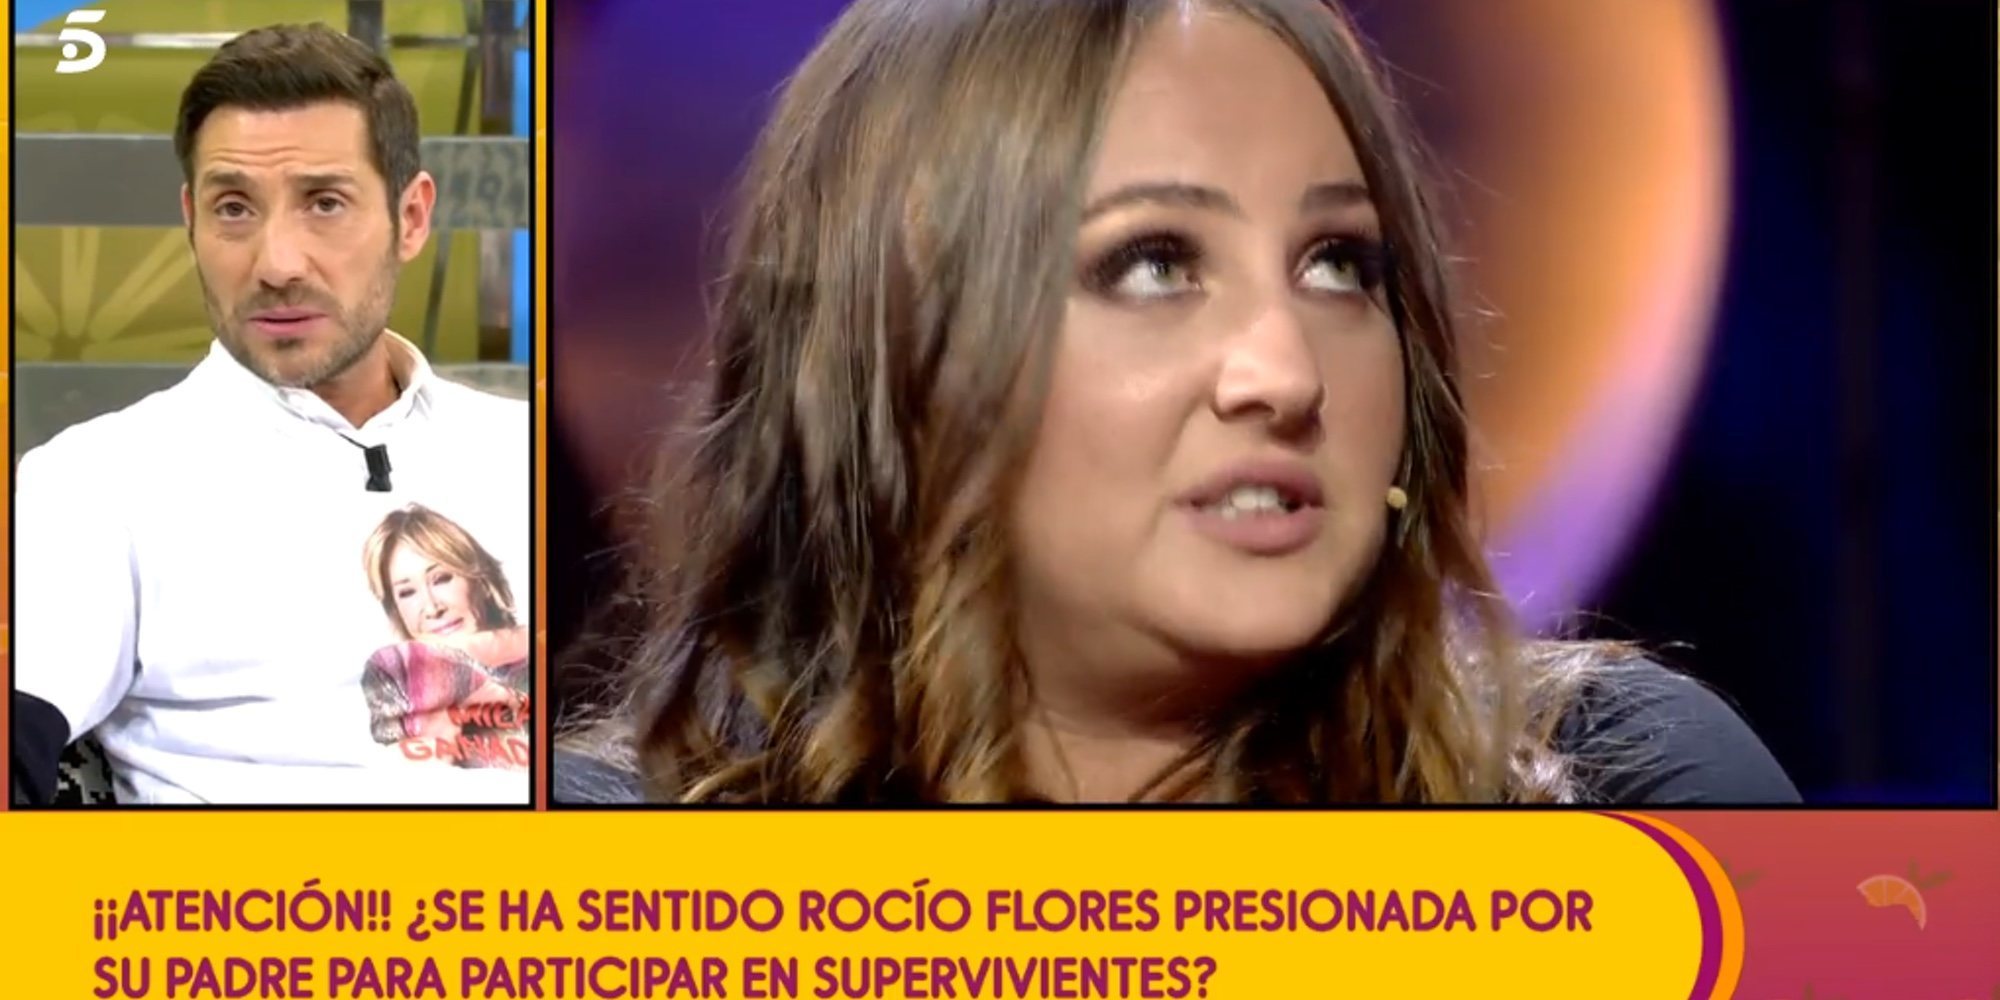 Antonio David sobre si Rocío Flores irá a 'SV': "Puedo entender que quiera ayudarme económicamente"